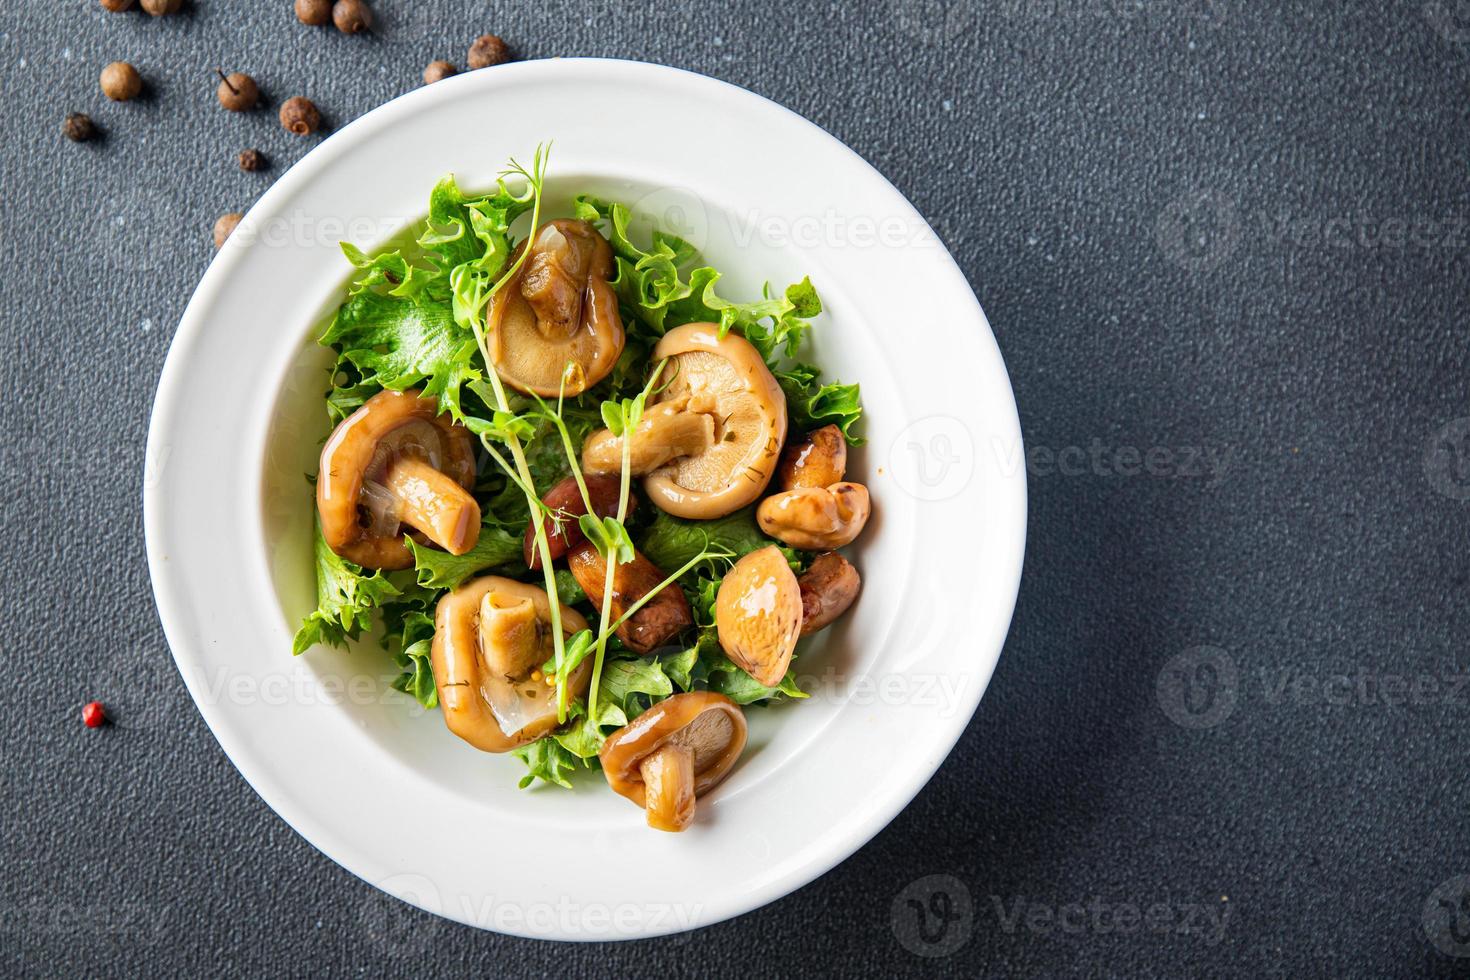 salade de mélange de champignons marinés nourriture végétalienne ou végétarienne photo